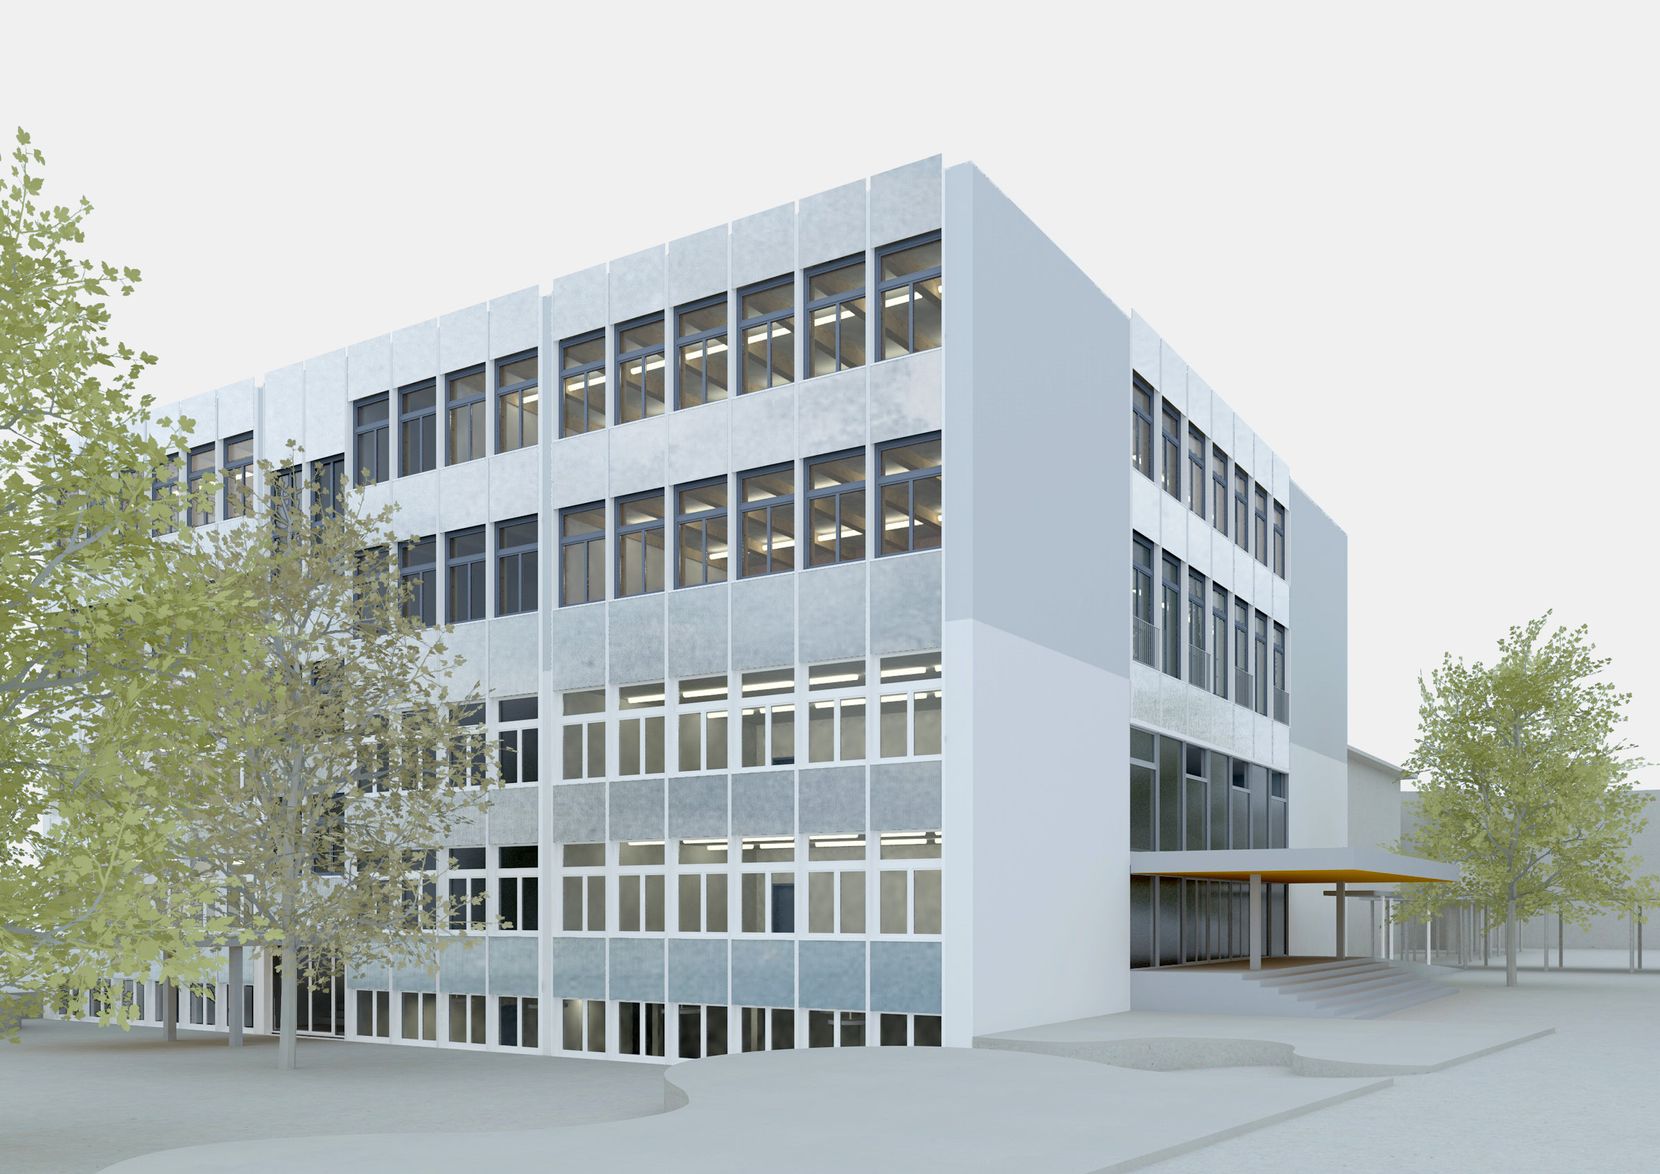 Man sieht eine realistische Animation von einem Schulgebäude von aussen.